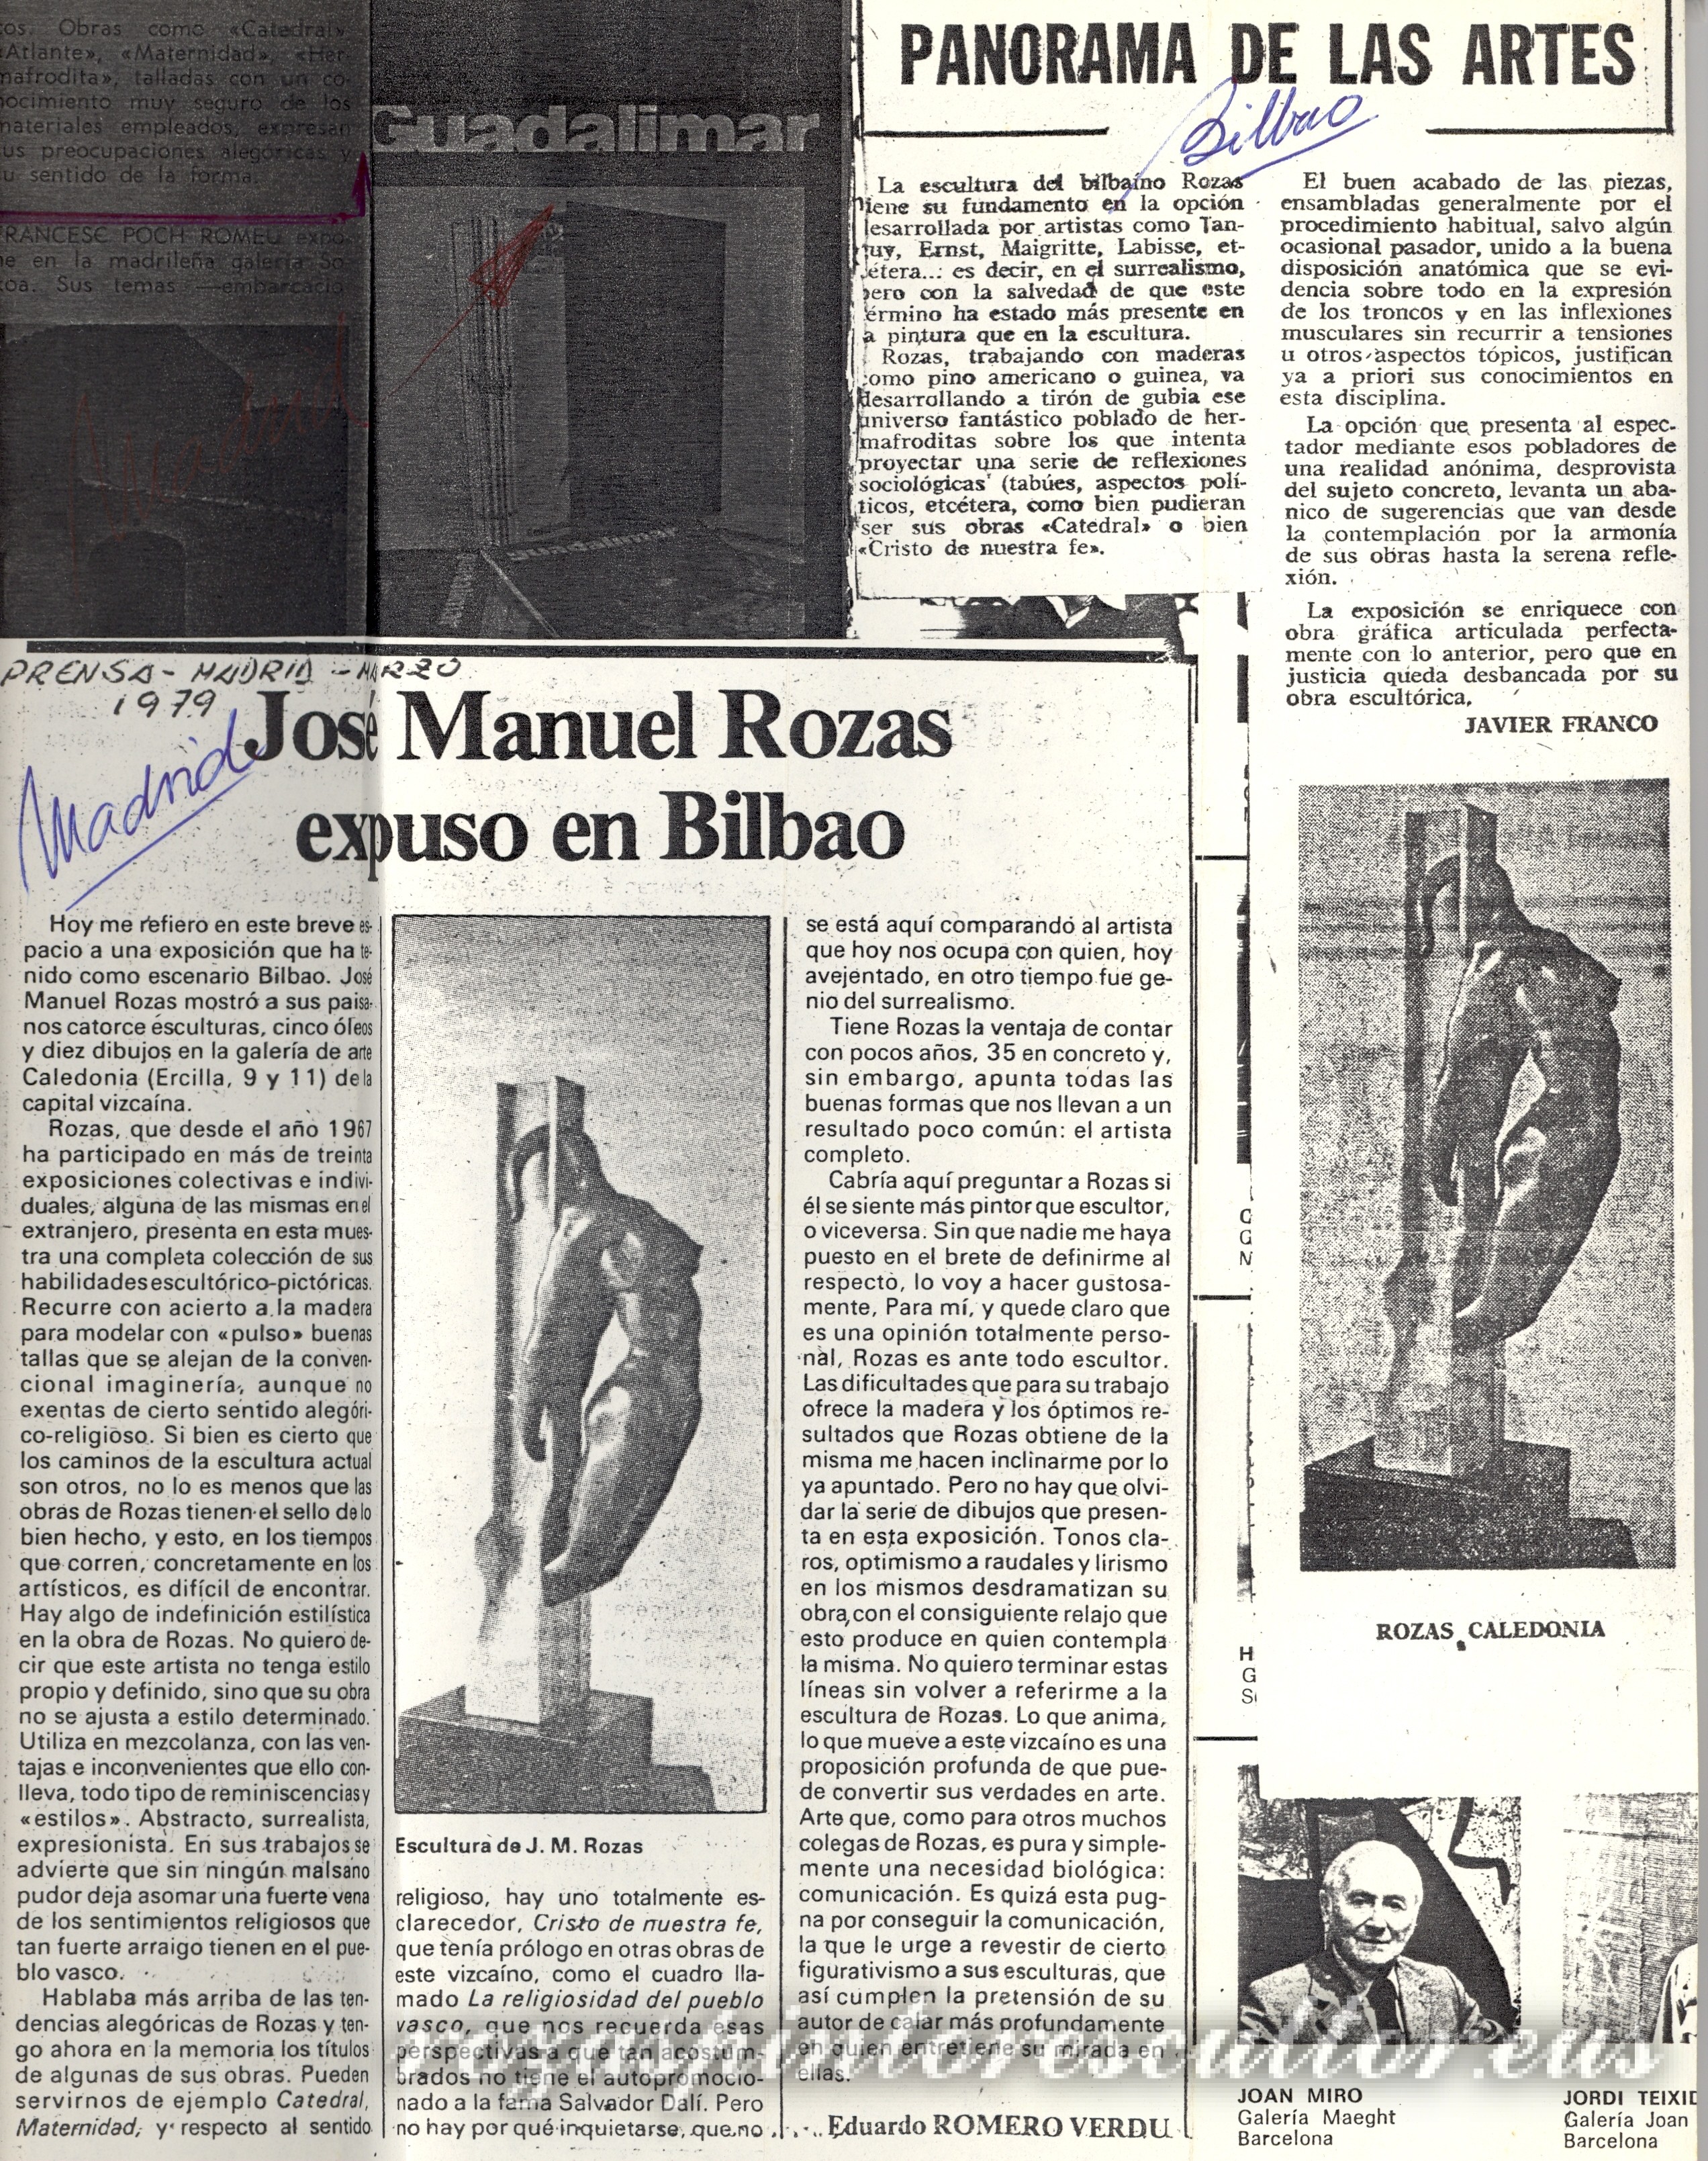 1979 JM Rozas expuso en Bilbao – Eduardo Romero Verdu